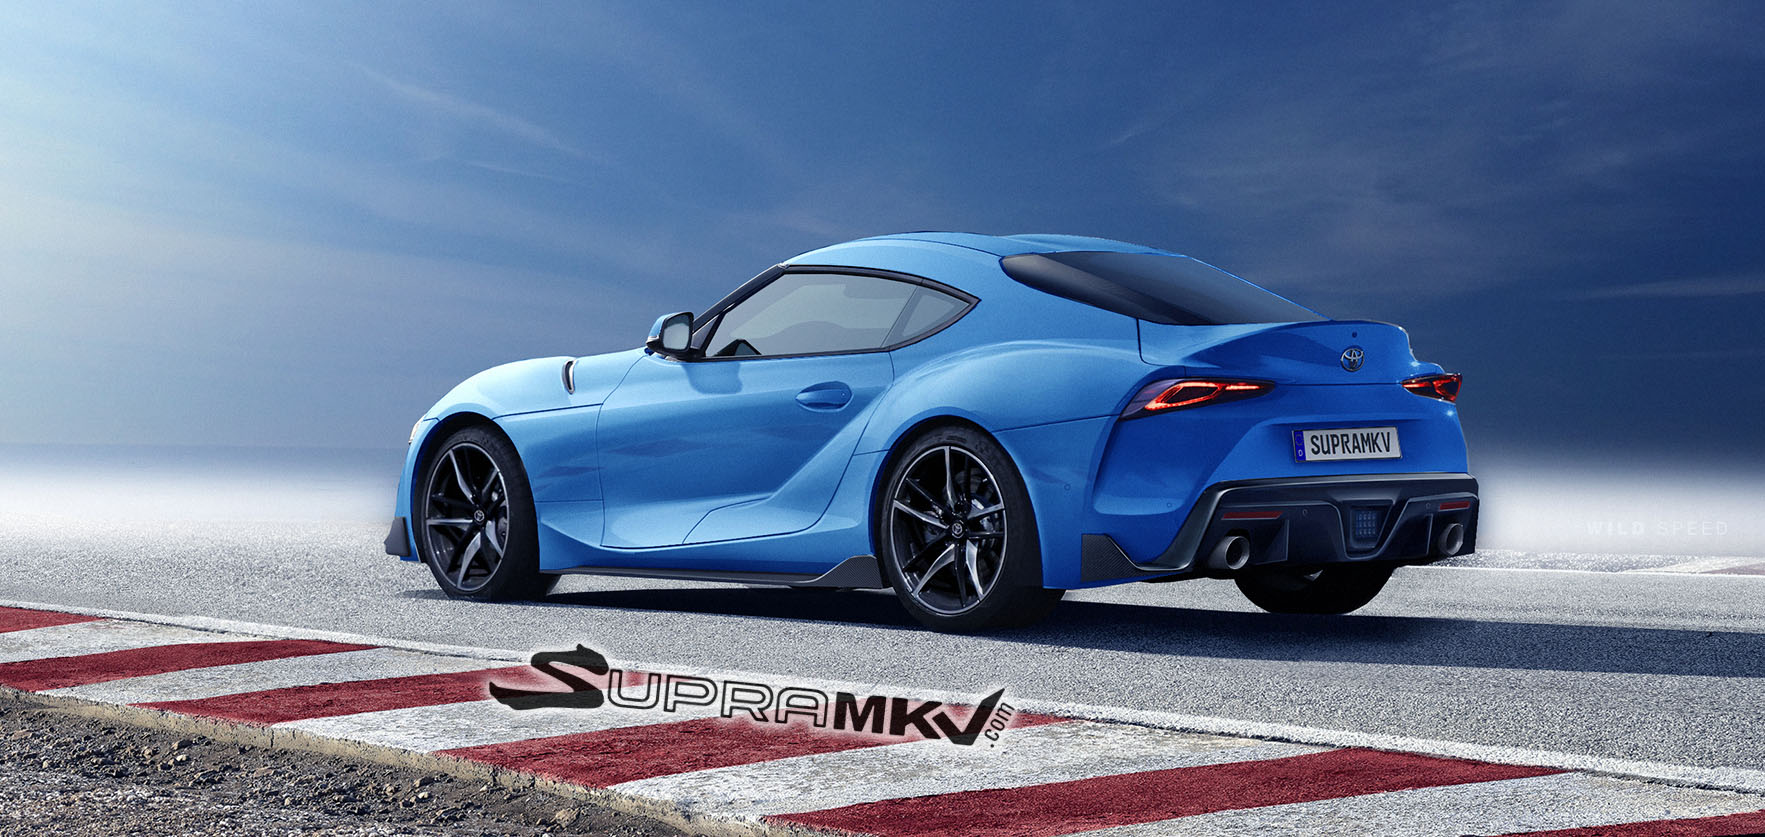 Supra MKV-rear-blue.jpg